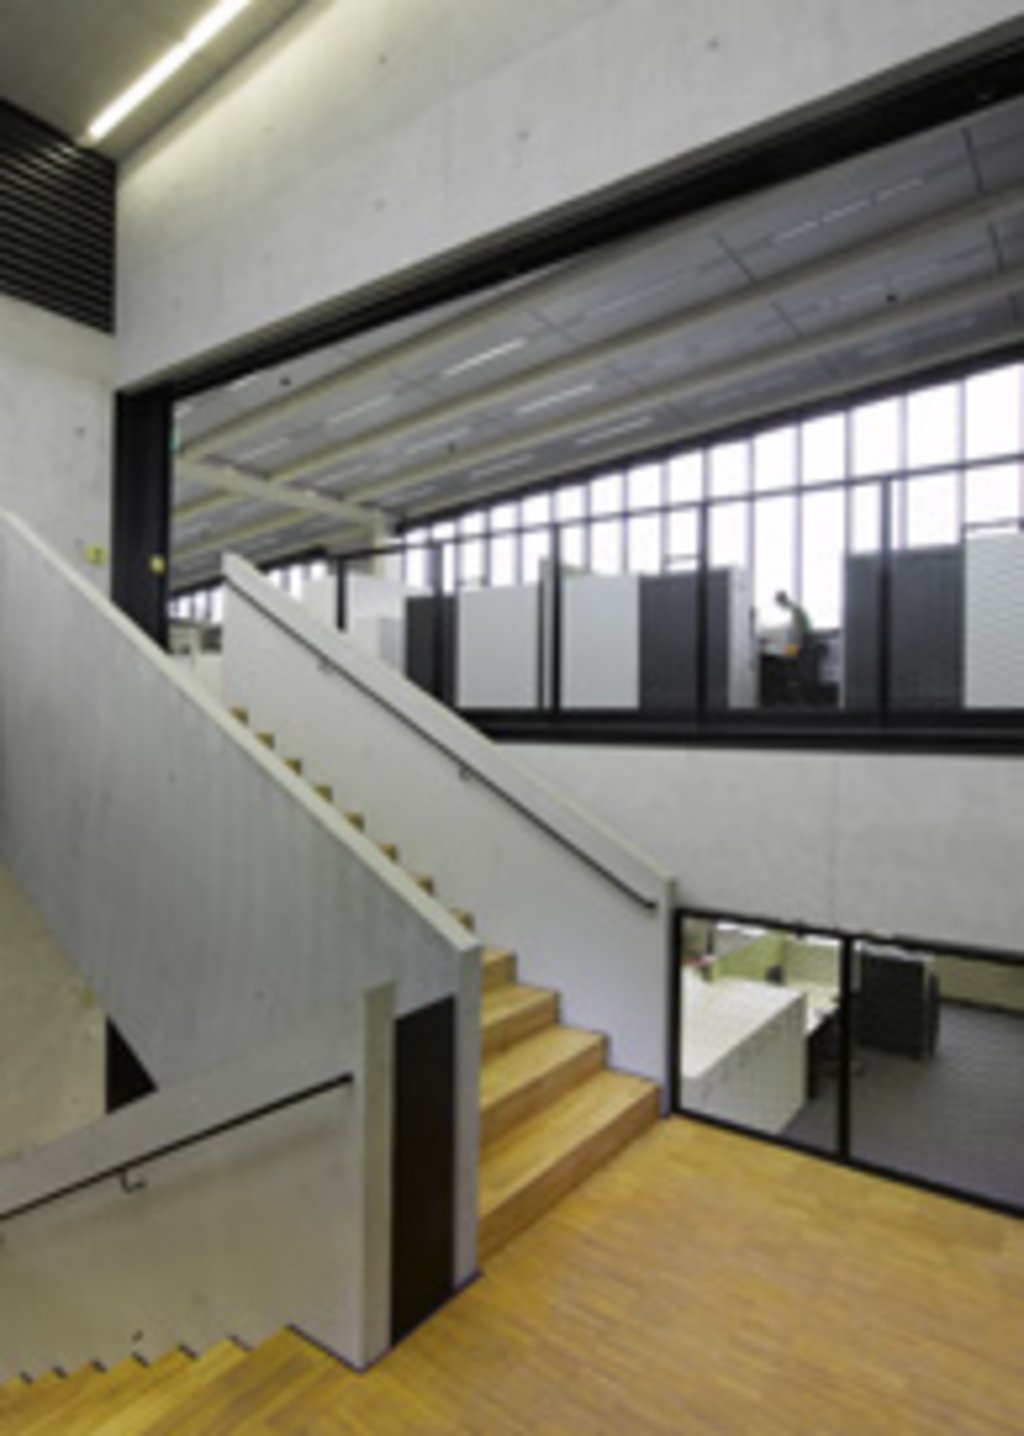 In jeder Bürospange verbinden die Treppenhäuser die offenen Splitlevel-Ebenen